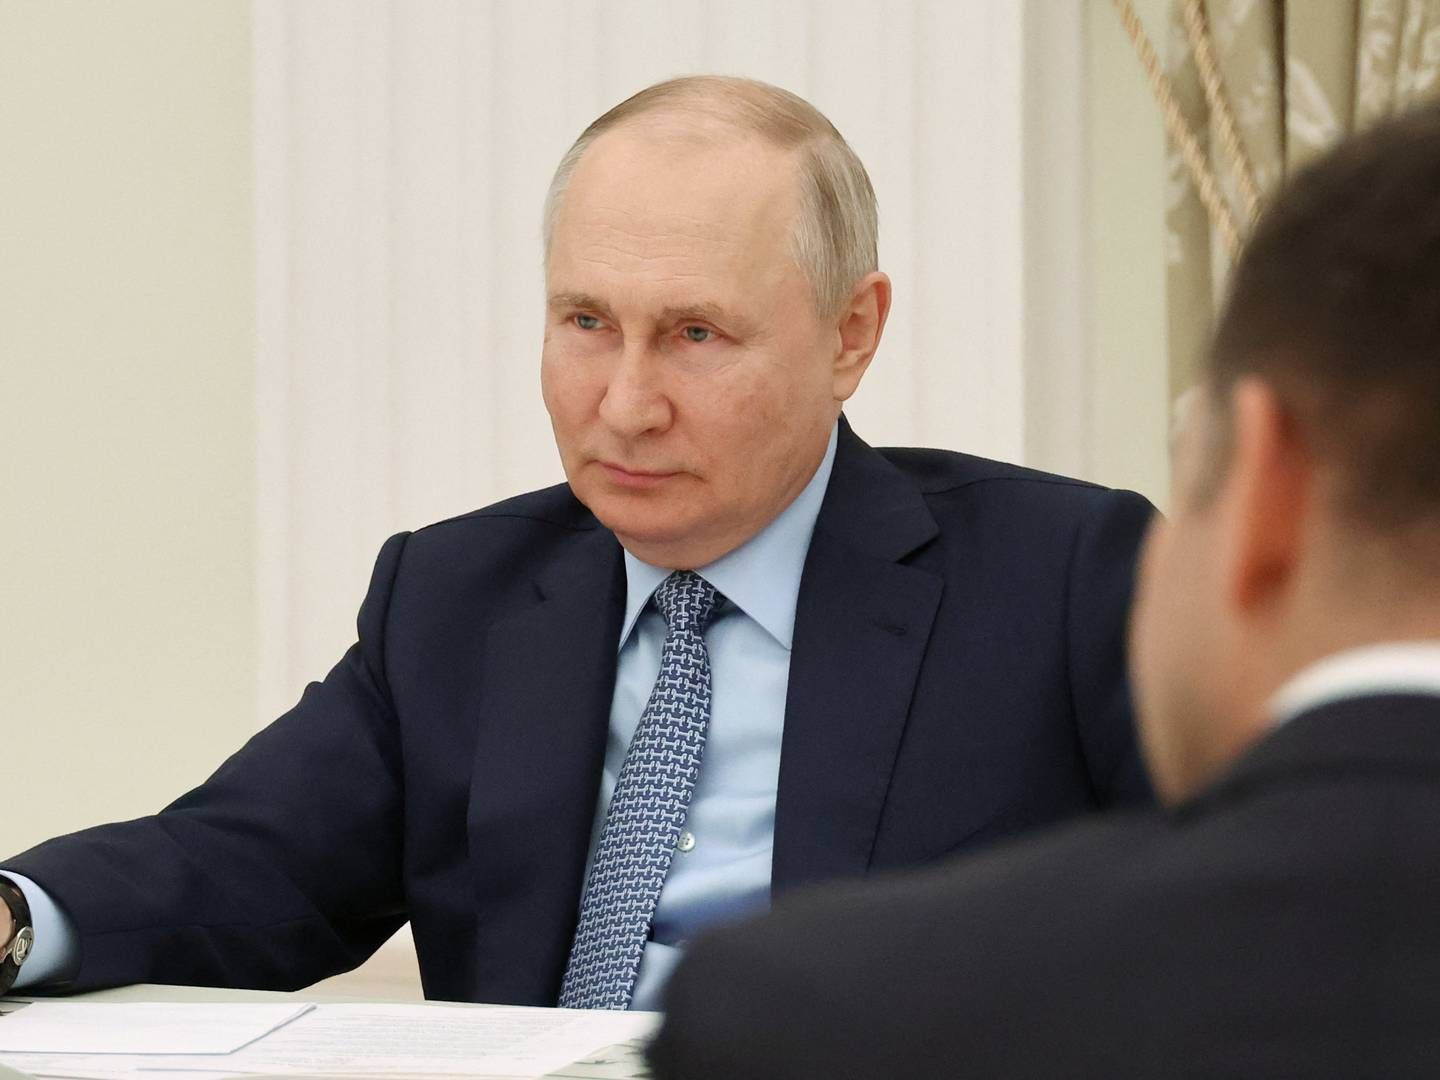 Søndag 16. juli underskrev den russiske præsident Vladimir Putin et dekret, som gjorde Rusland i stand til at tage kontrollen med Carlsbergs forretning i landet. Dagen efter blev overtagelsen gennemført. | Foto: Sputnik